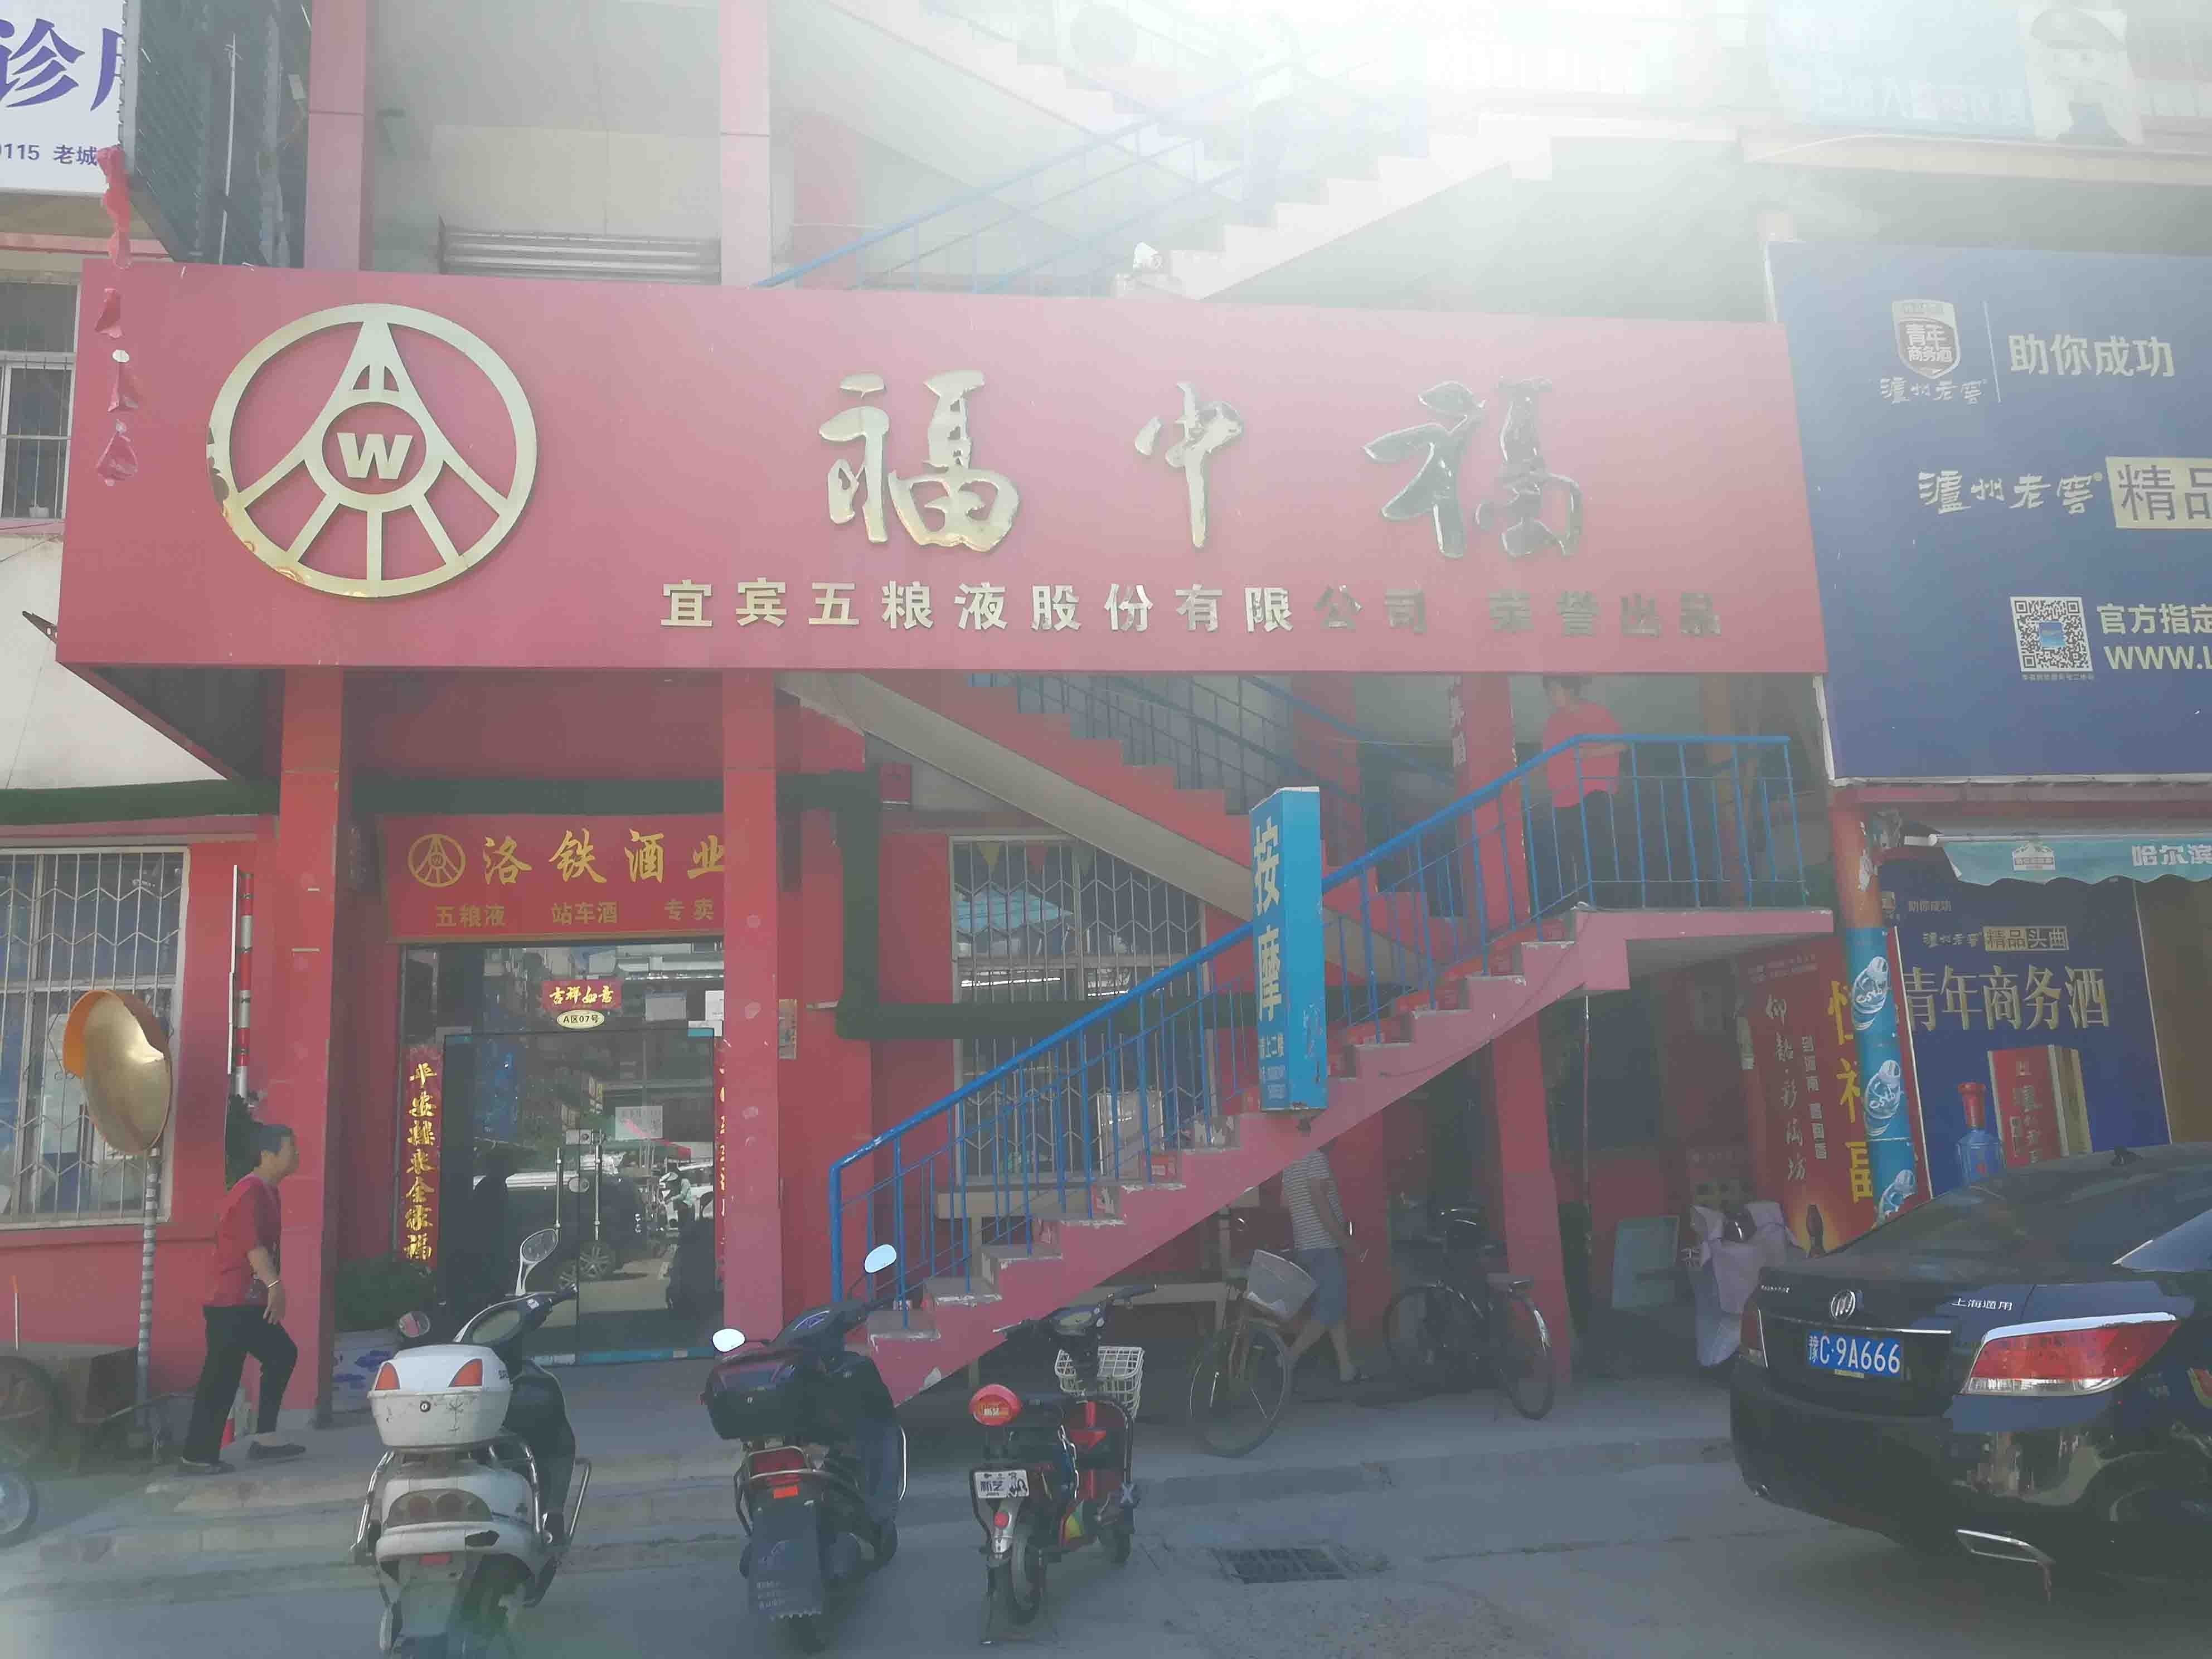 上海市场中街洛阳商业地产出租服务，提供舞蹈的商铺和写字楼选项。无论您是企业还是成熟企业，我们的列表都能满足您的需求